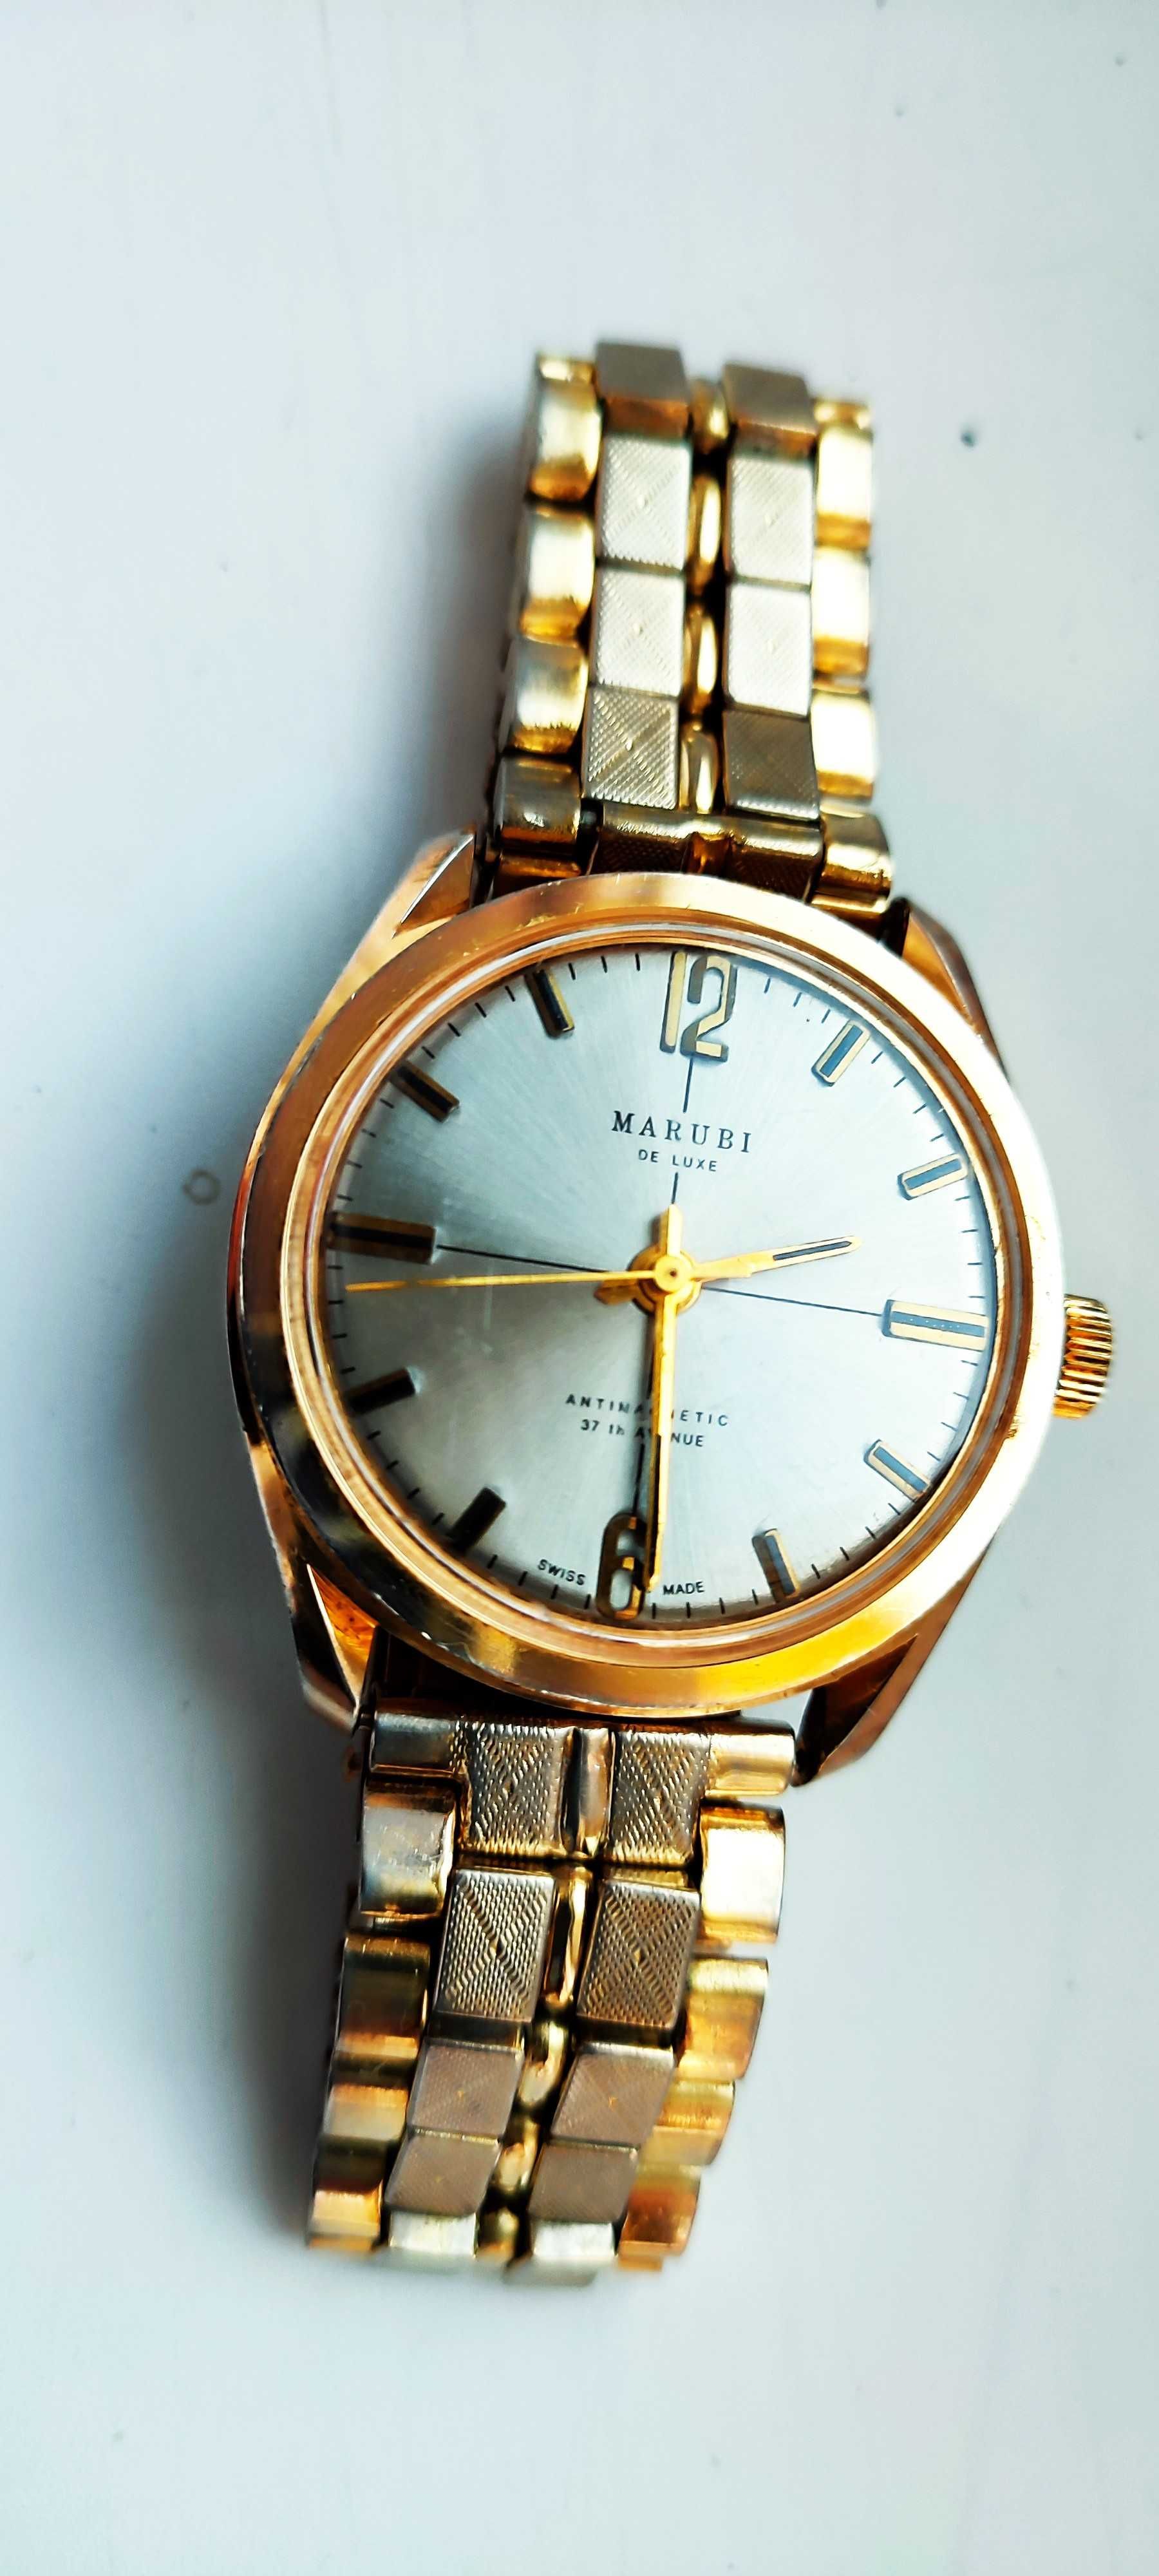 Zegarek naręczny Marubi sprawny